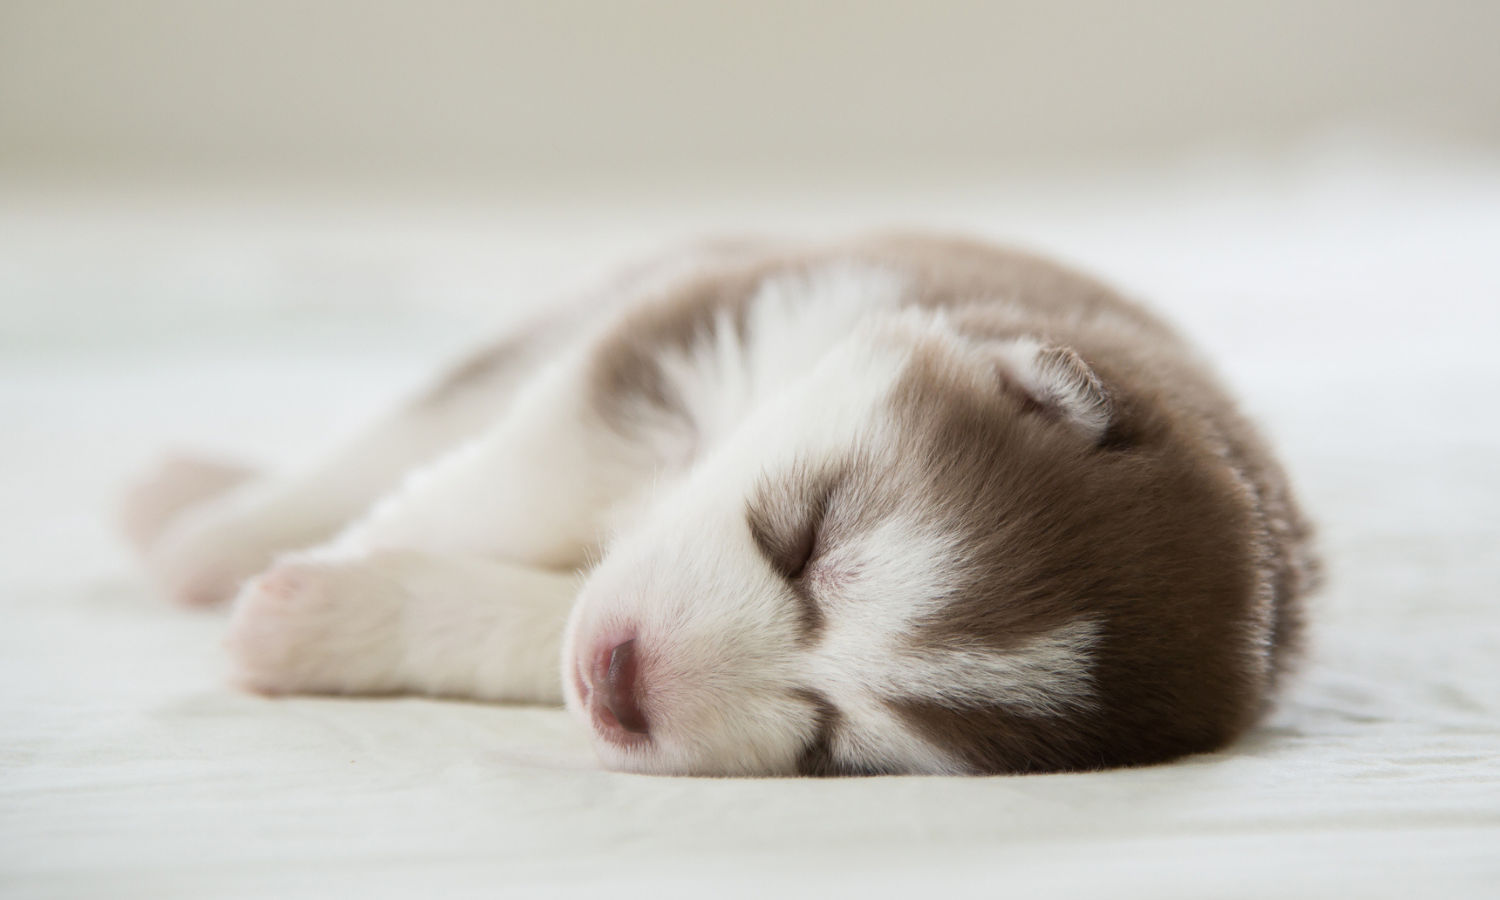 Viele Hunde dürfen bei ihren Besitzern im Bett schlafen. © iStock.com